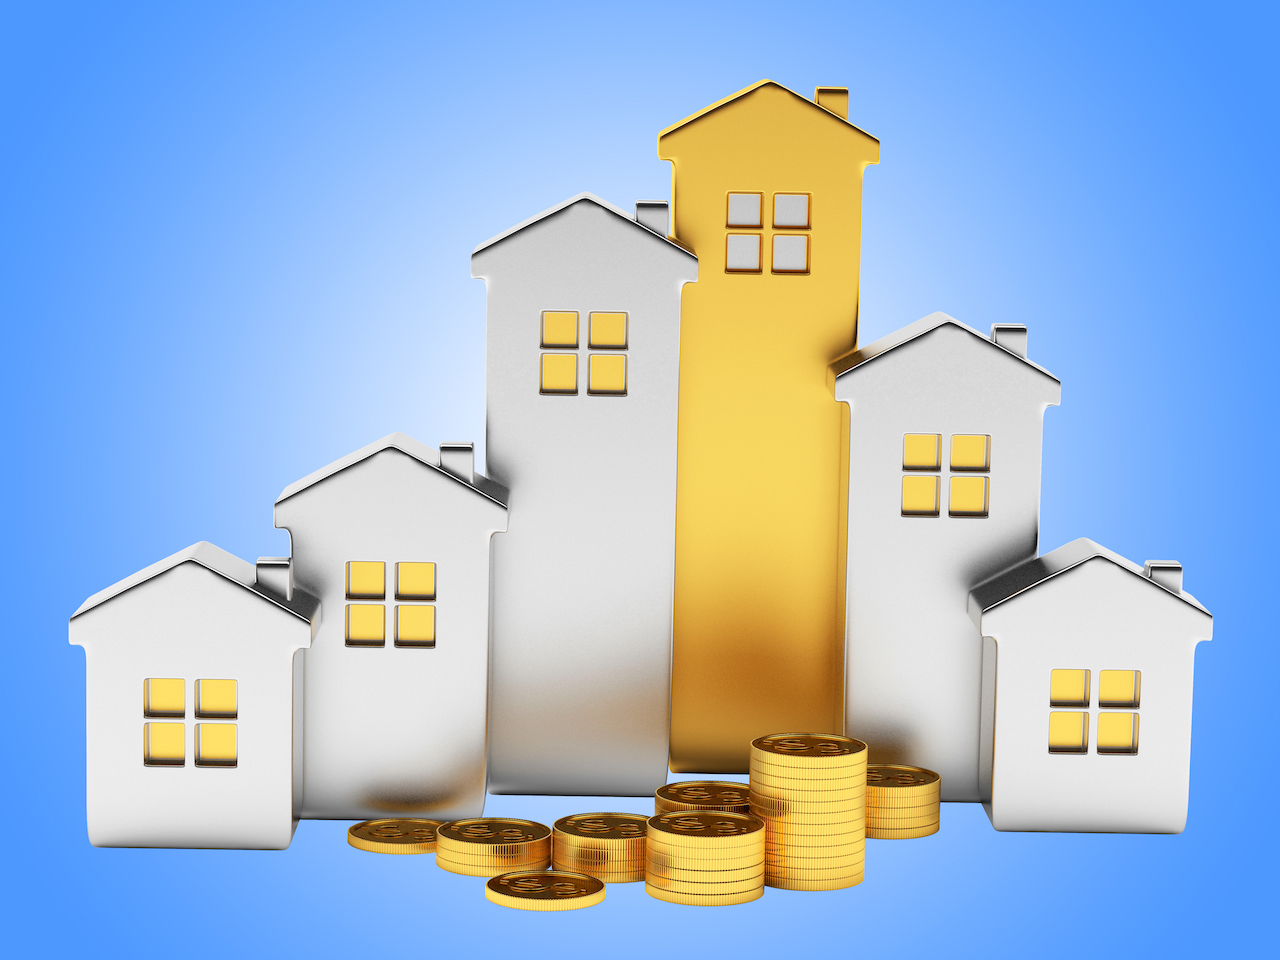 Réduction de l’impôt sur la plus-value pour stimuler la construction de logements